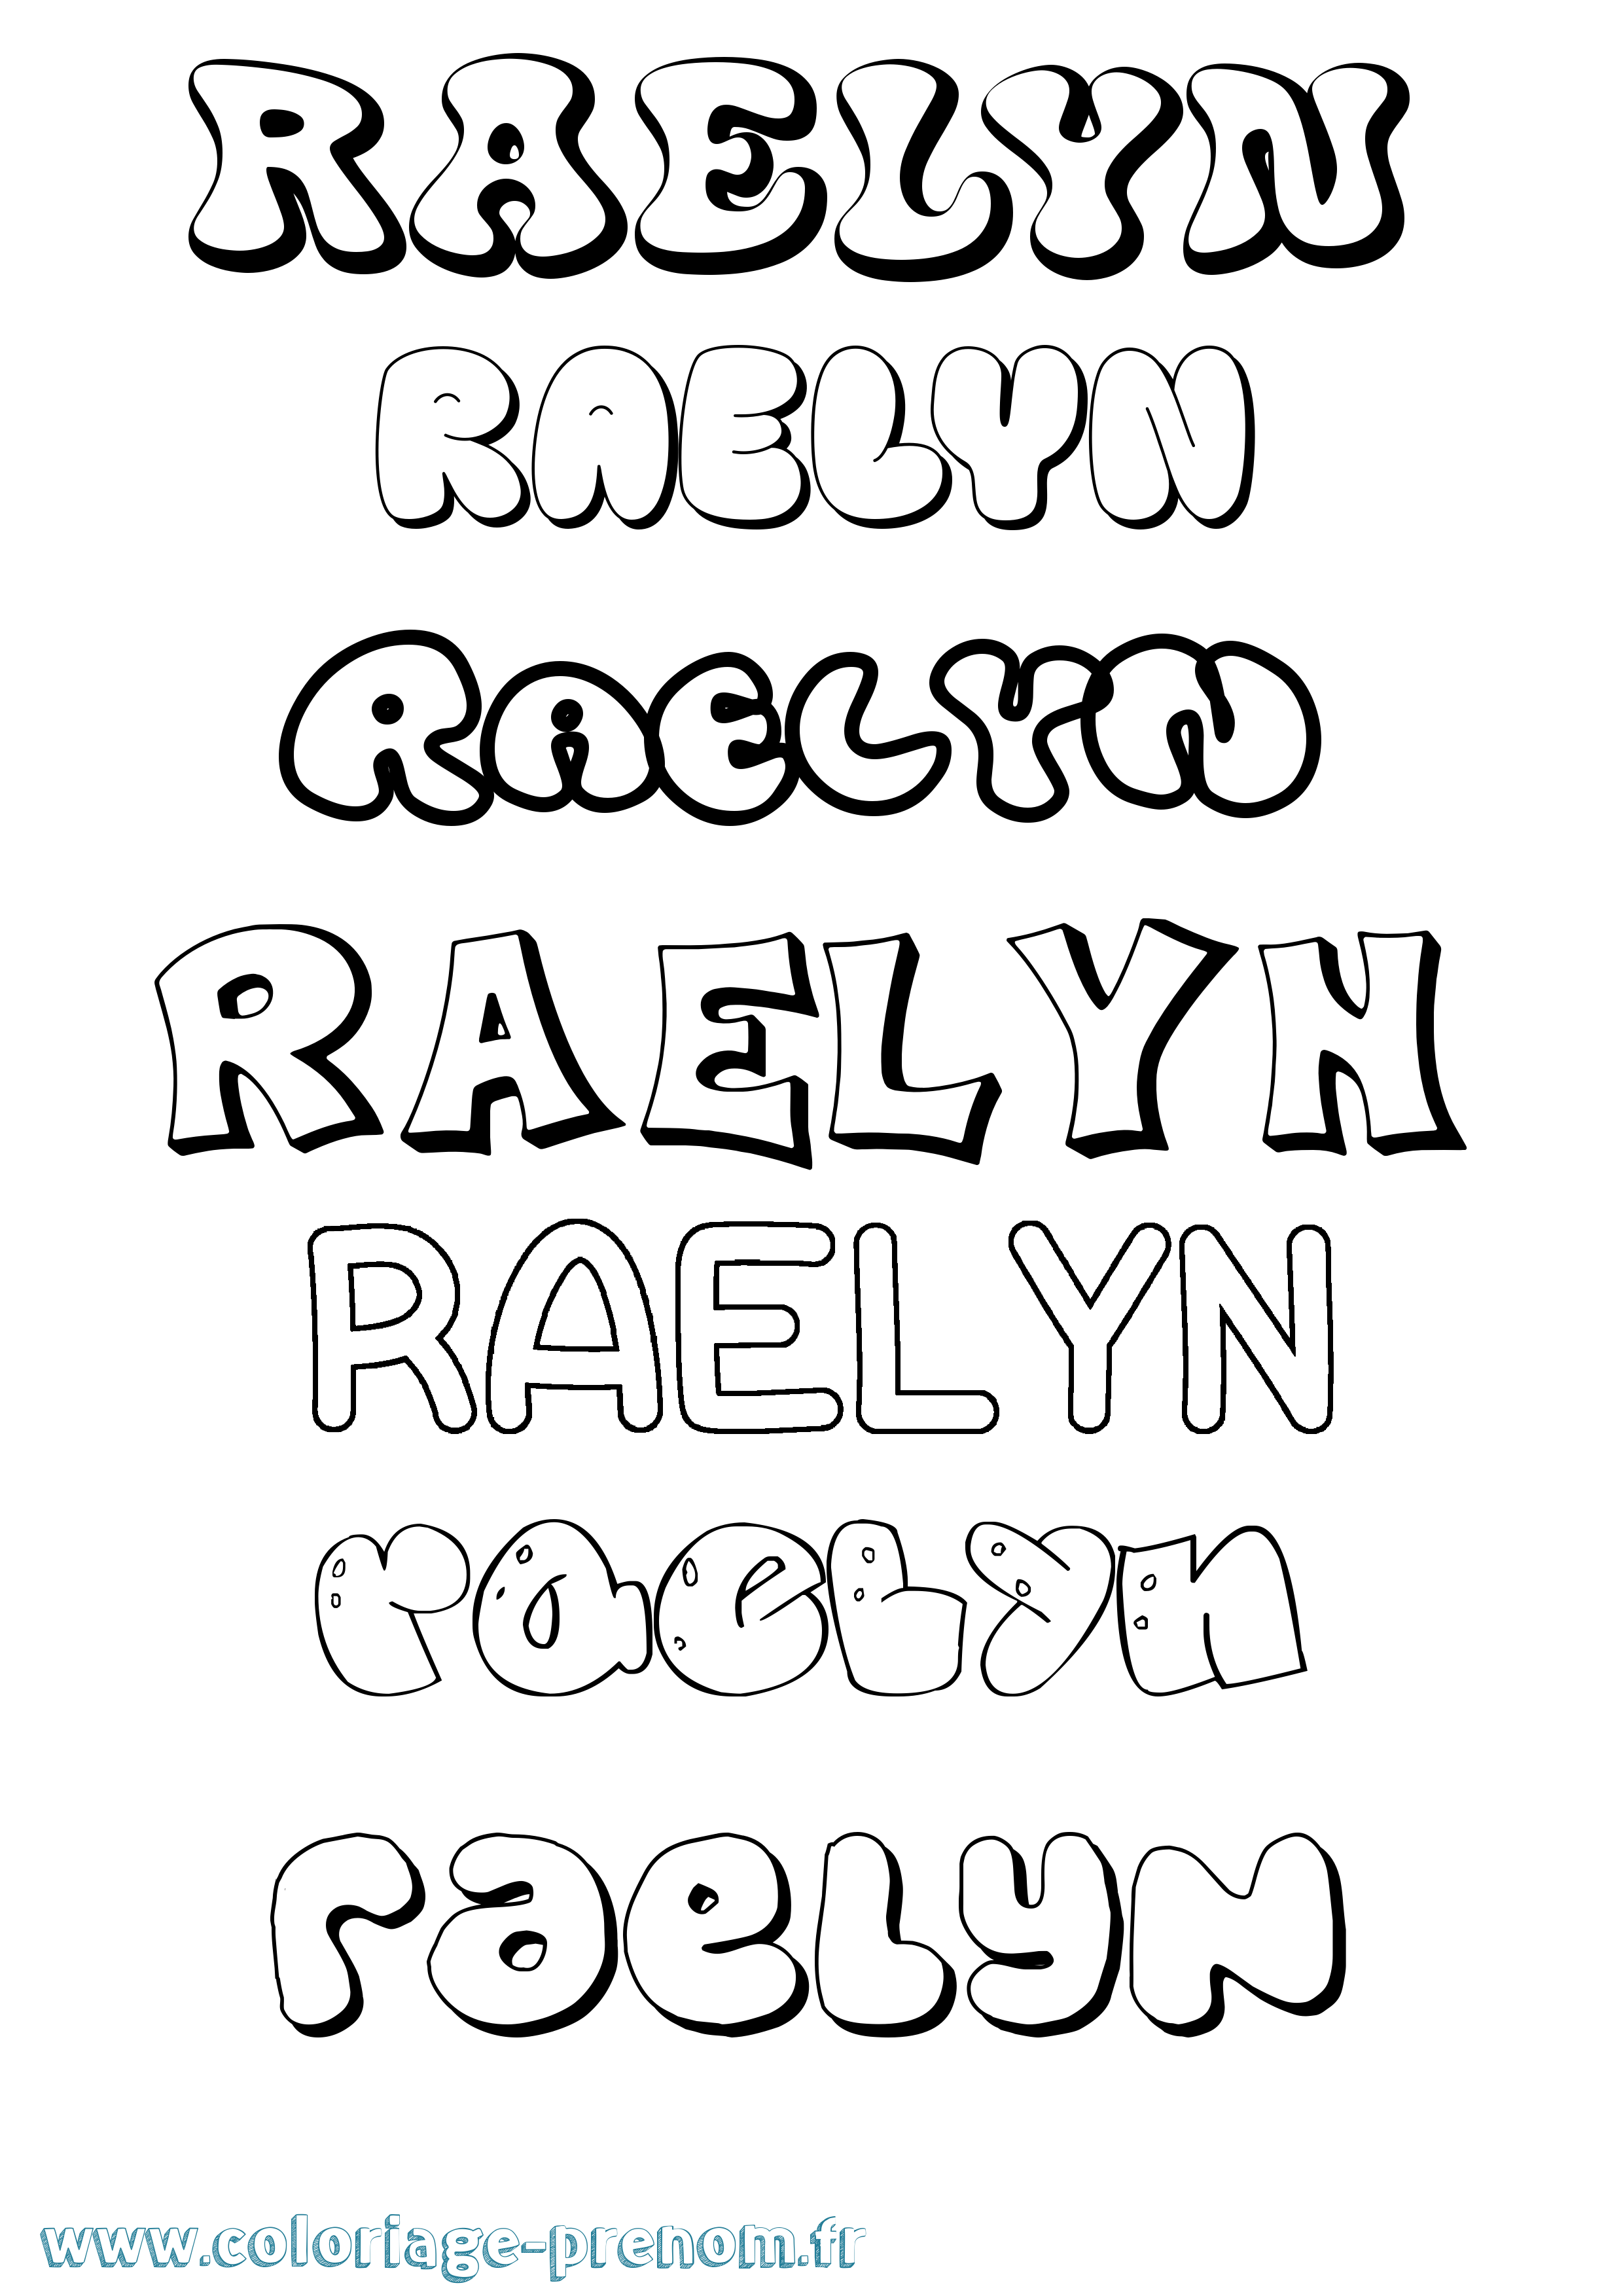 Coloriage prénom Raelyn Bubble